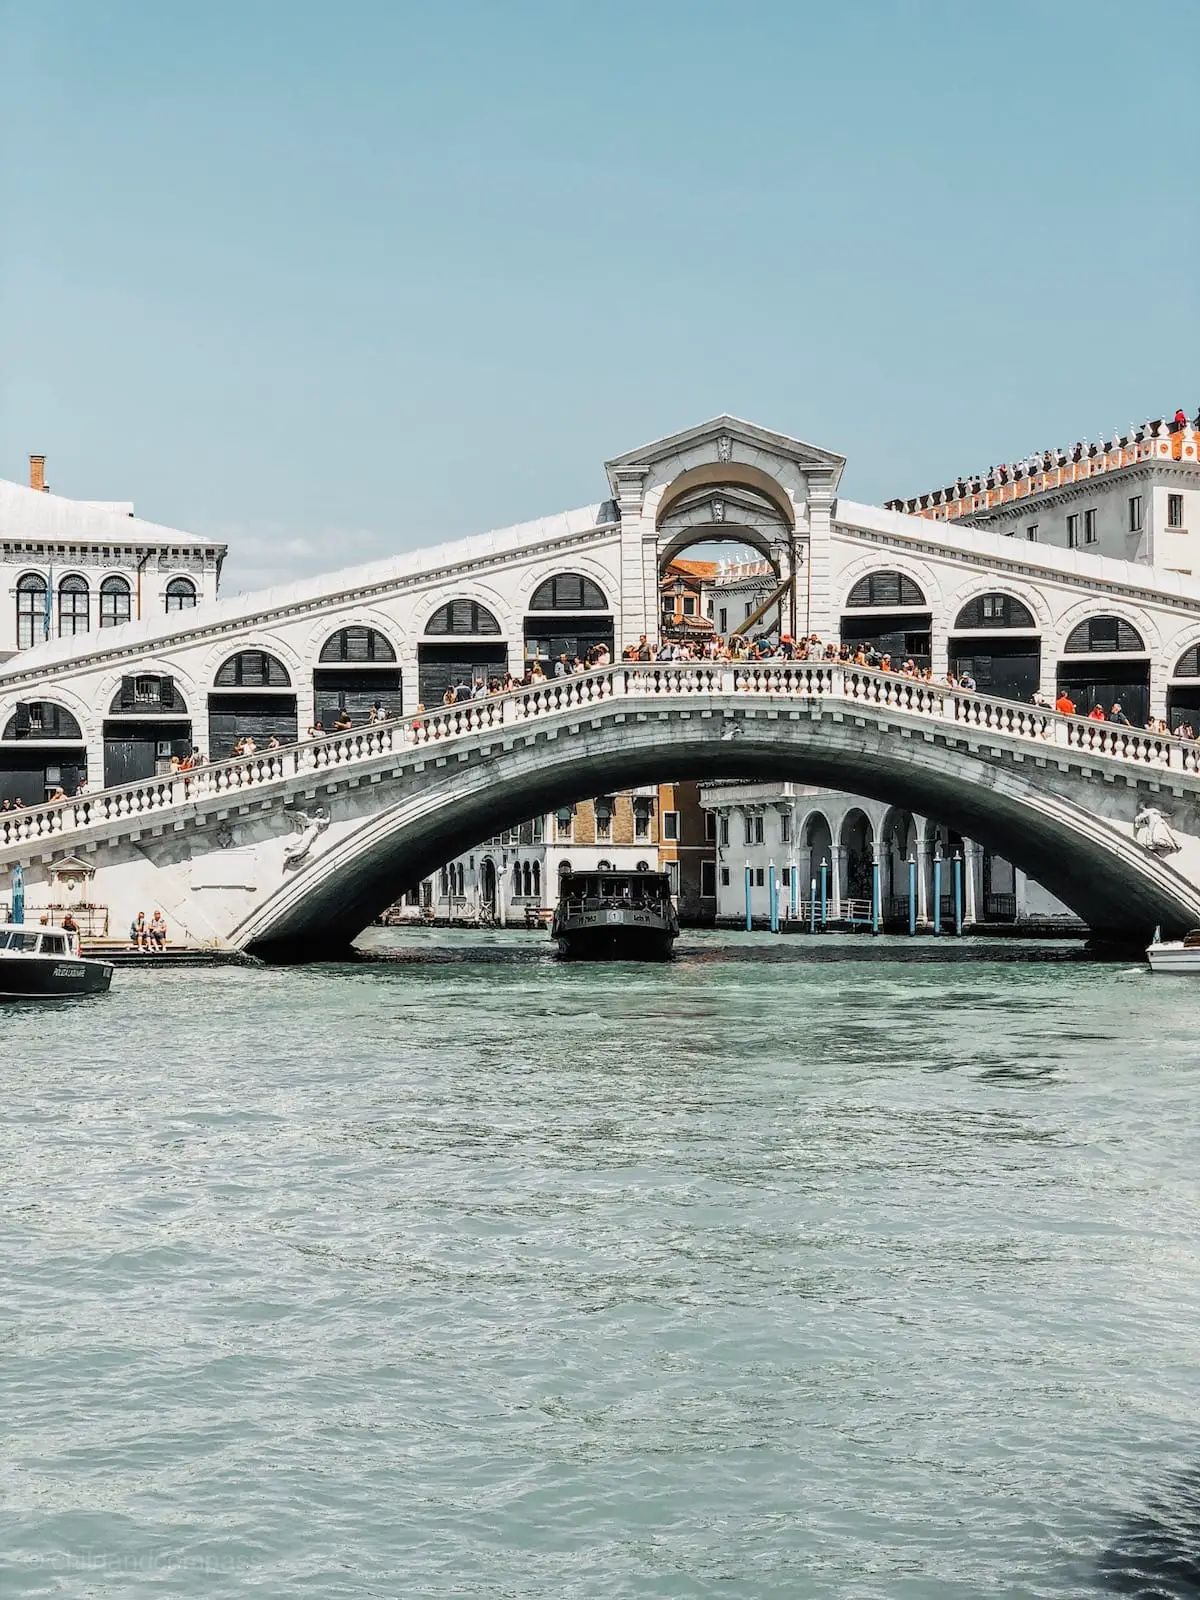 Rialtobrücke,Venedig Sehenswürdigkeiten, Städtereise nach Venedig Städtetrip, Kanäle und Brücken in Venedig, Gondeln, Urlaub in Italien